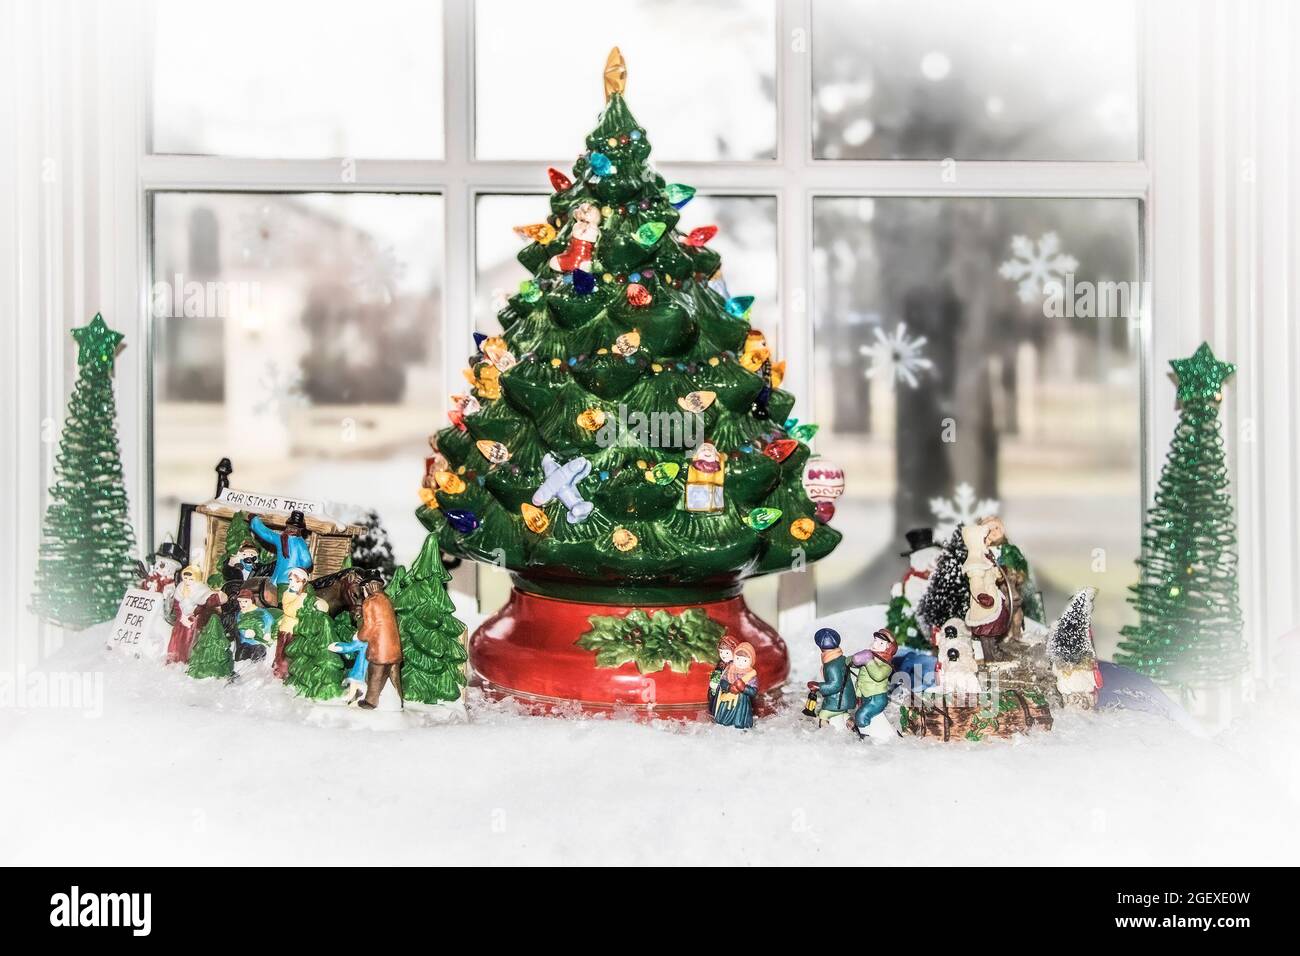 Scène du village de Noël installé dans une fenêtre avec un sapin de Noël rétro décoratif géant et des personnages extérieurs - mise au point sélective et bokeh Banque D'Images